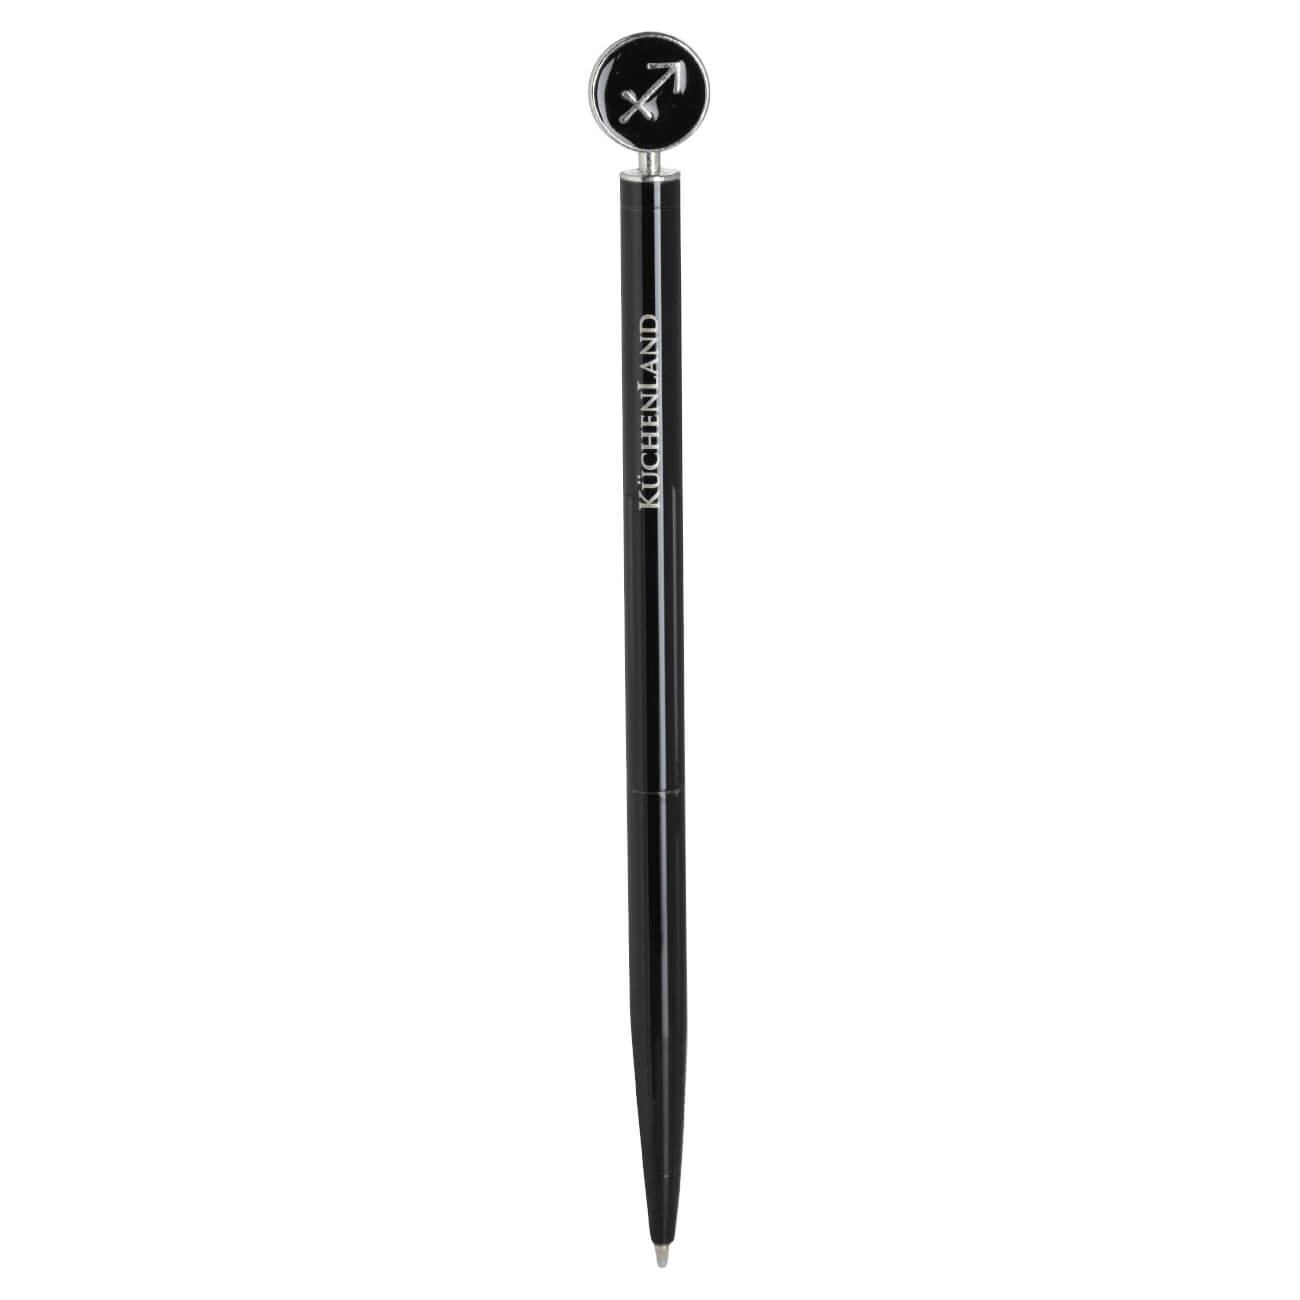 Ручка шариковая, 15 см, с фигуркой, сталь, черно-серебристая, Стрелец, Zodiac